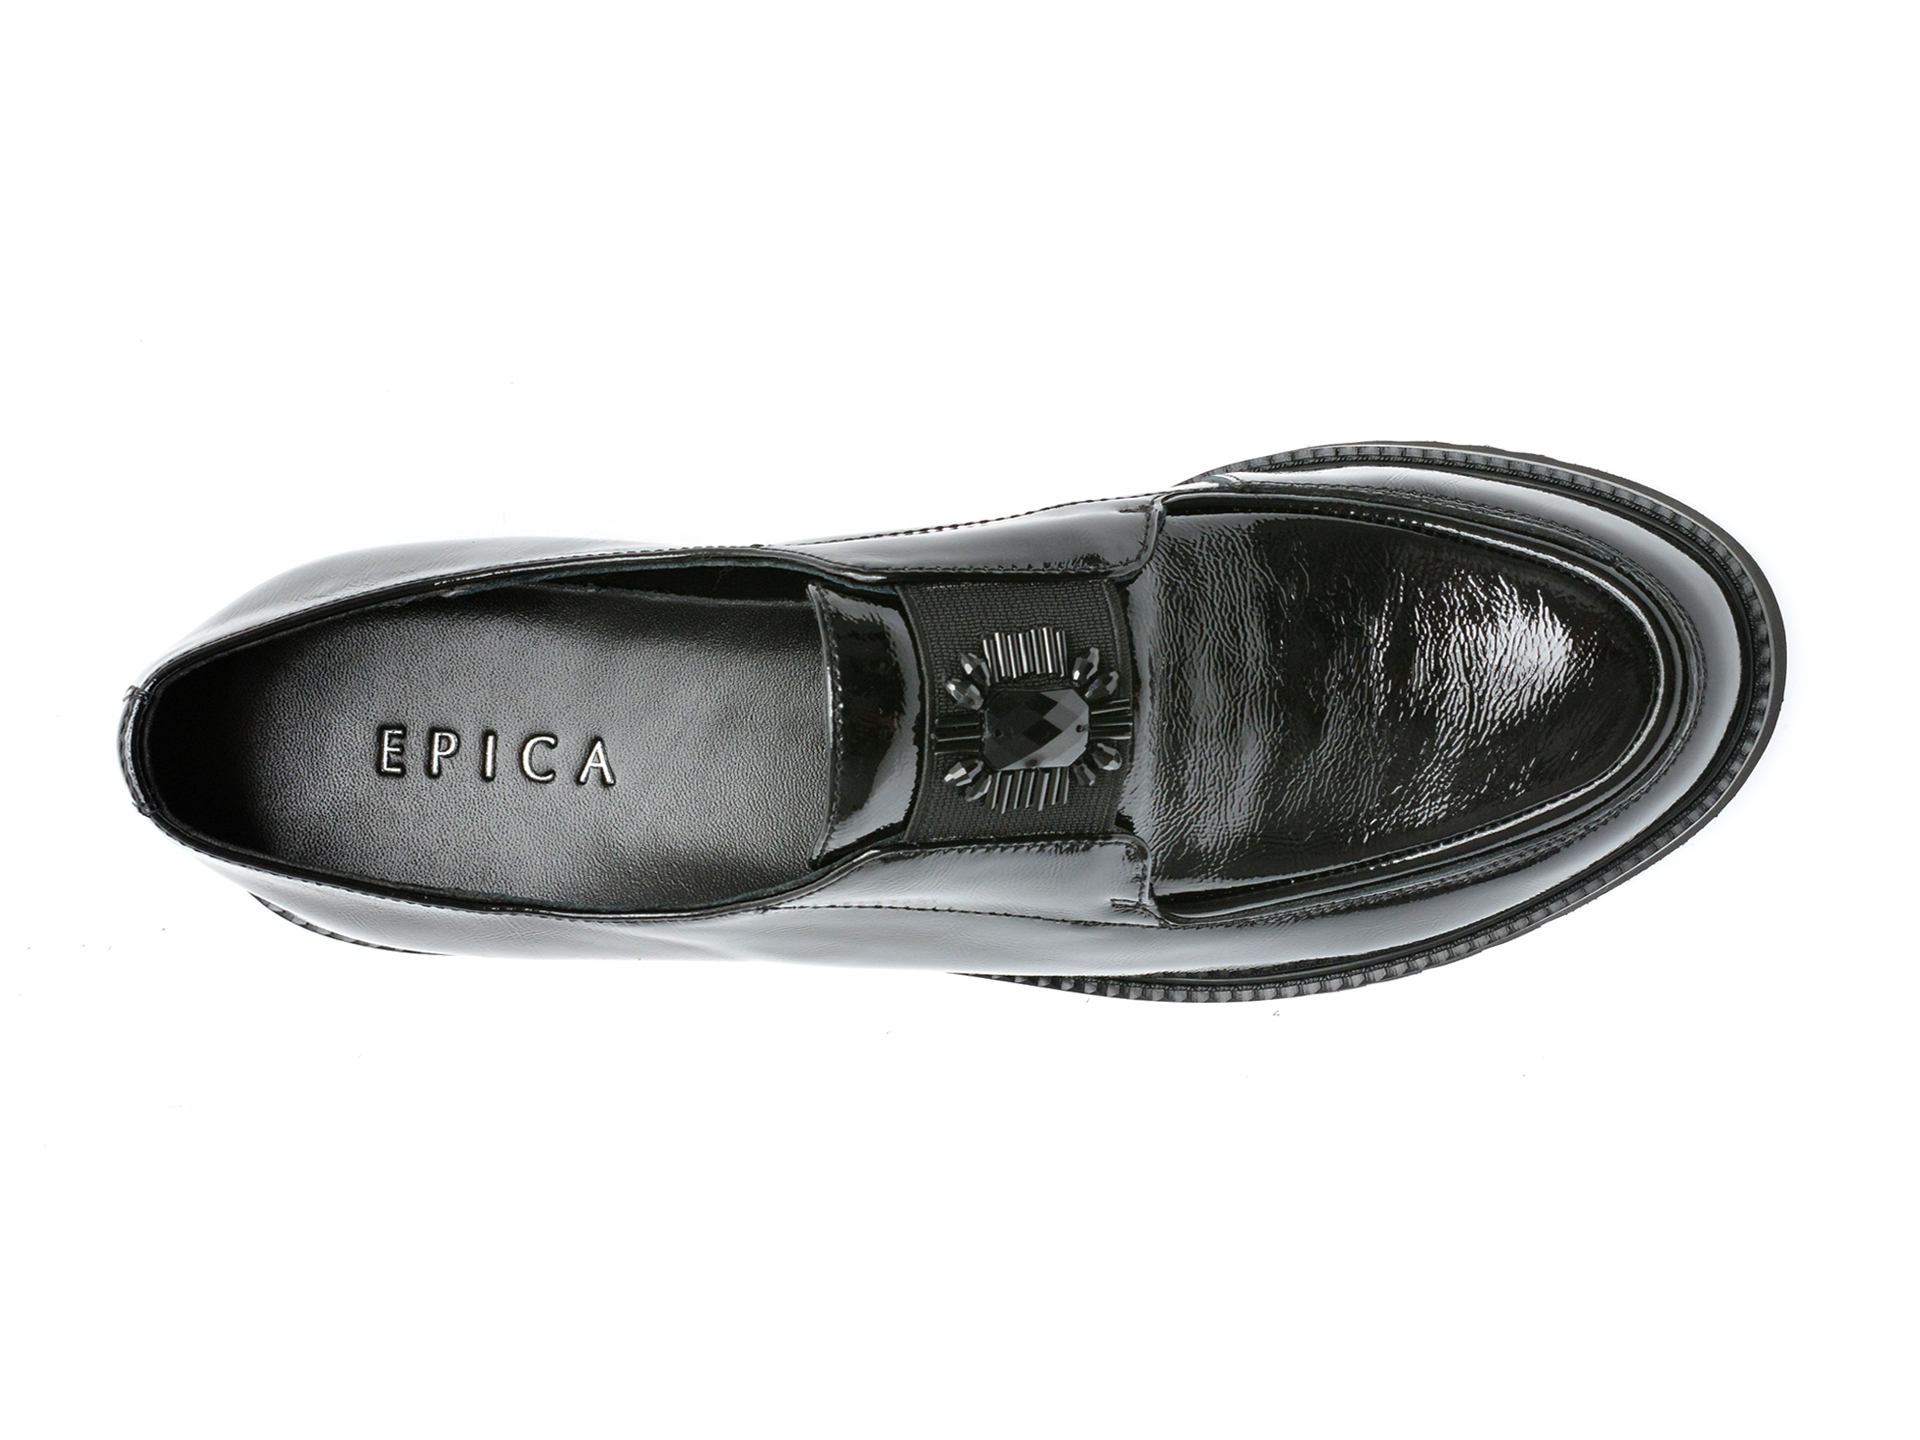 Poze Pantofi EPICA negri, G423S64, din piele naturala lacuita tezyo.ro